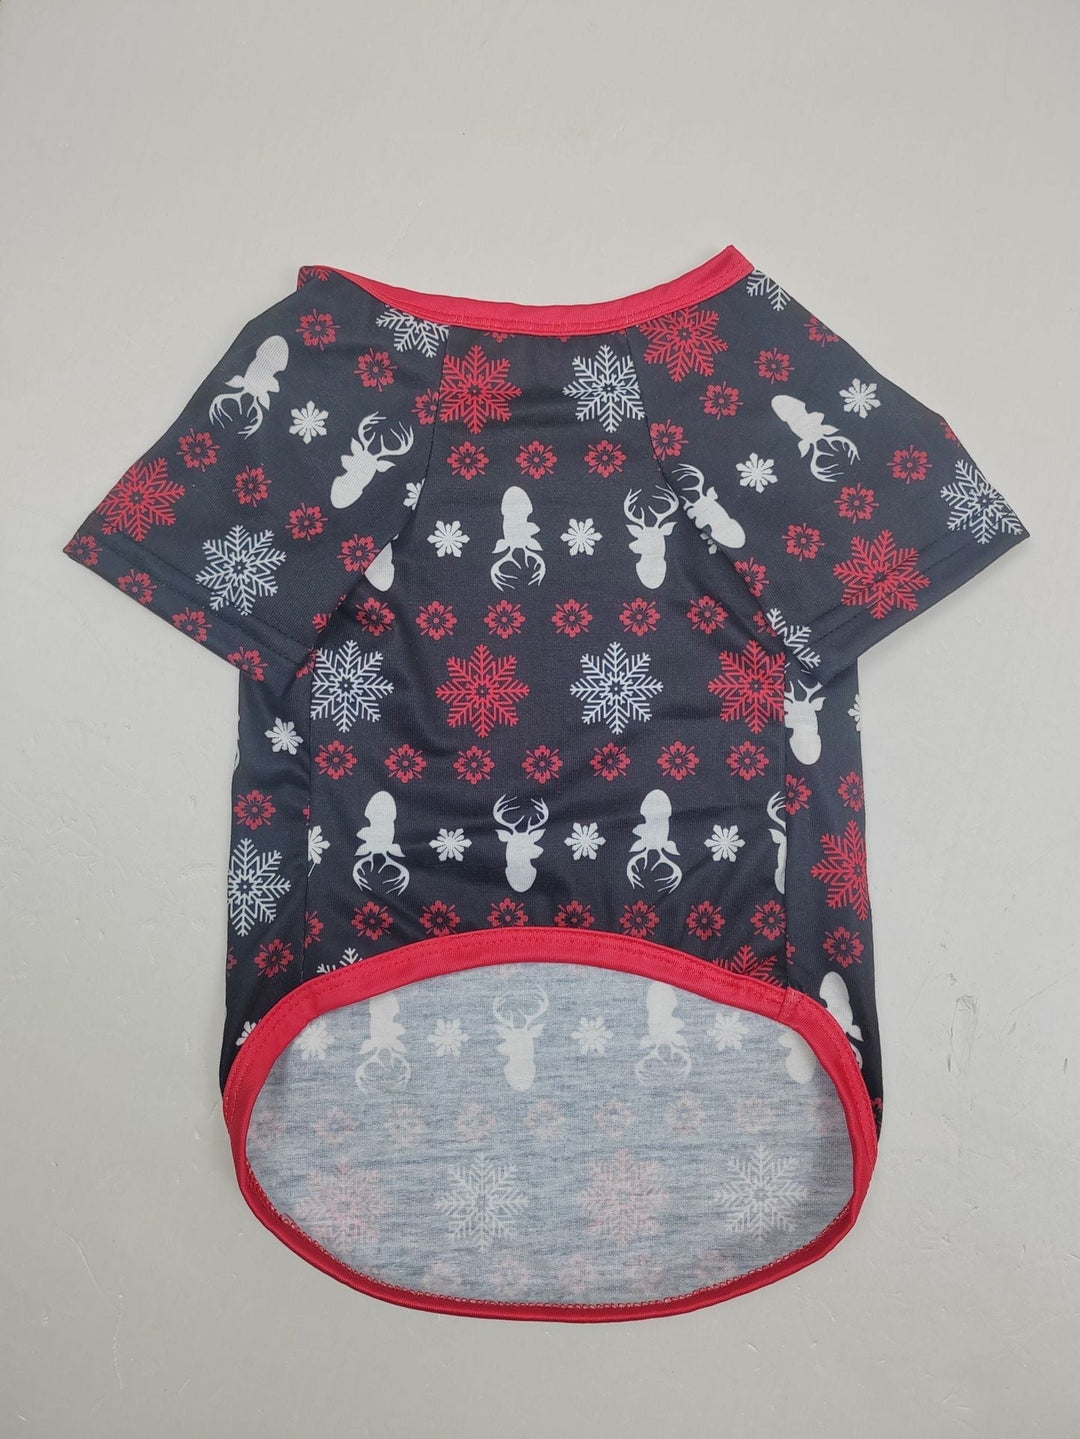 Set pigiama coordinato natalizio con cervo delle nevi rosso natalizio (con vestiti per cani)